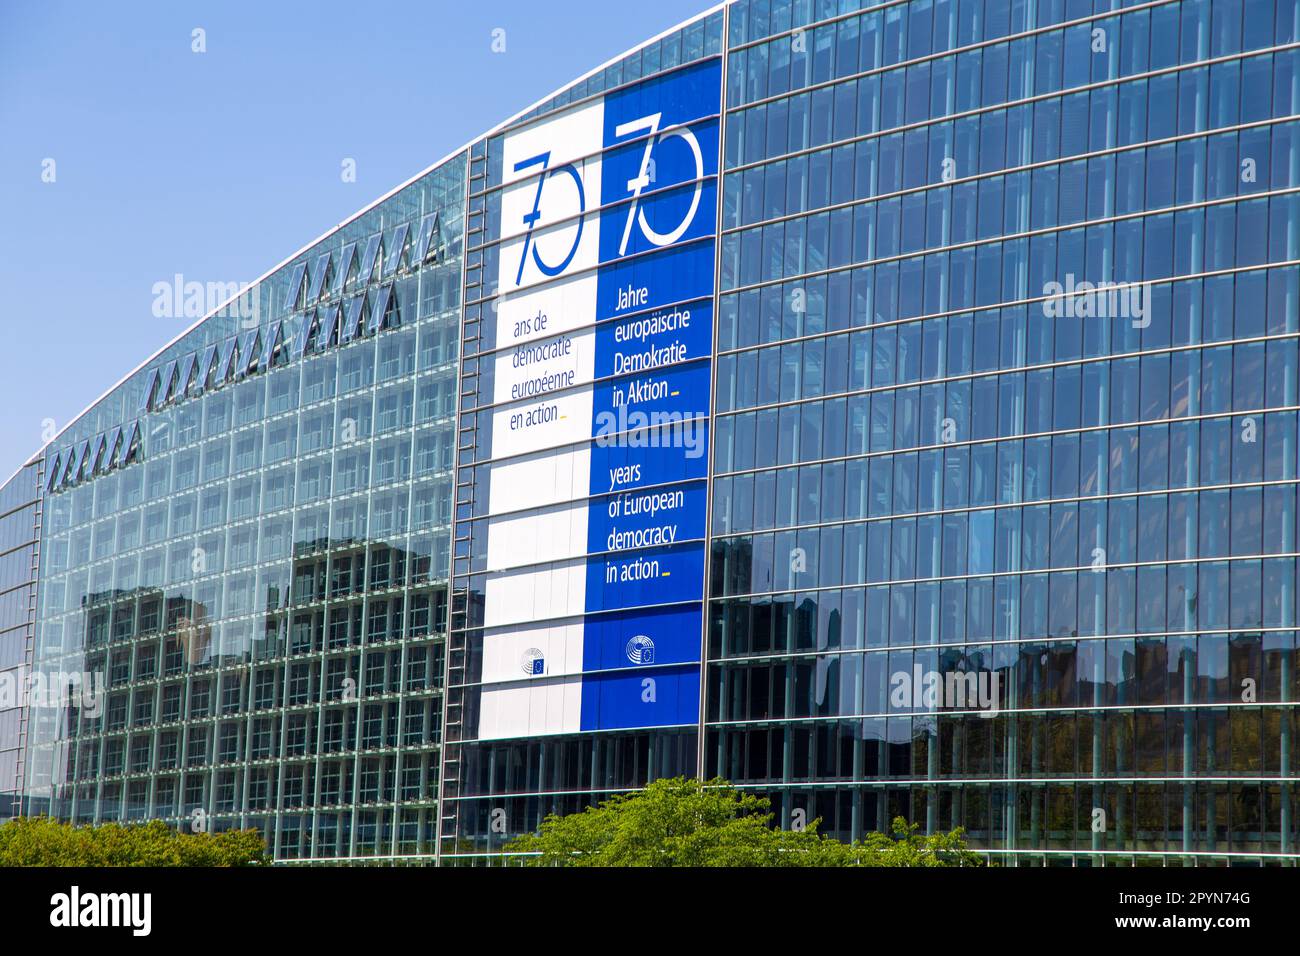 Hinten im Europäischen Parlament in Straßburg. Auf der Glasfassade sehen Sie ein riesiges Banner mit den Worten 70 Jahre europäische Demokratie in Acti Stockfoto